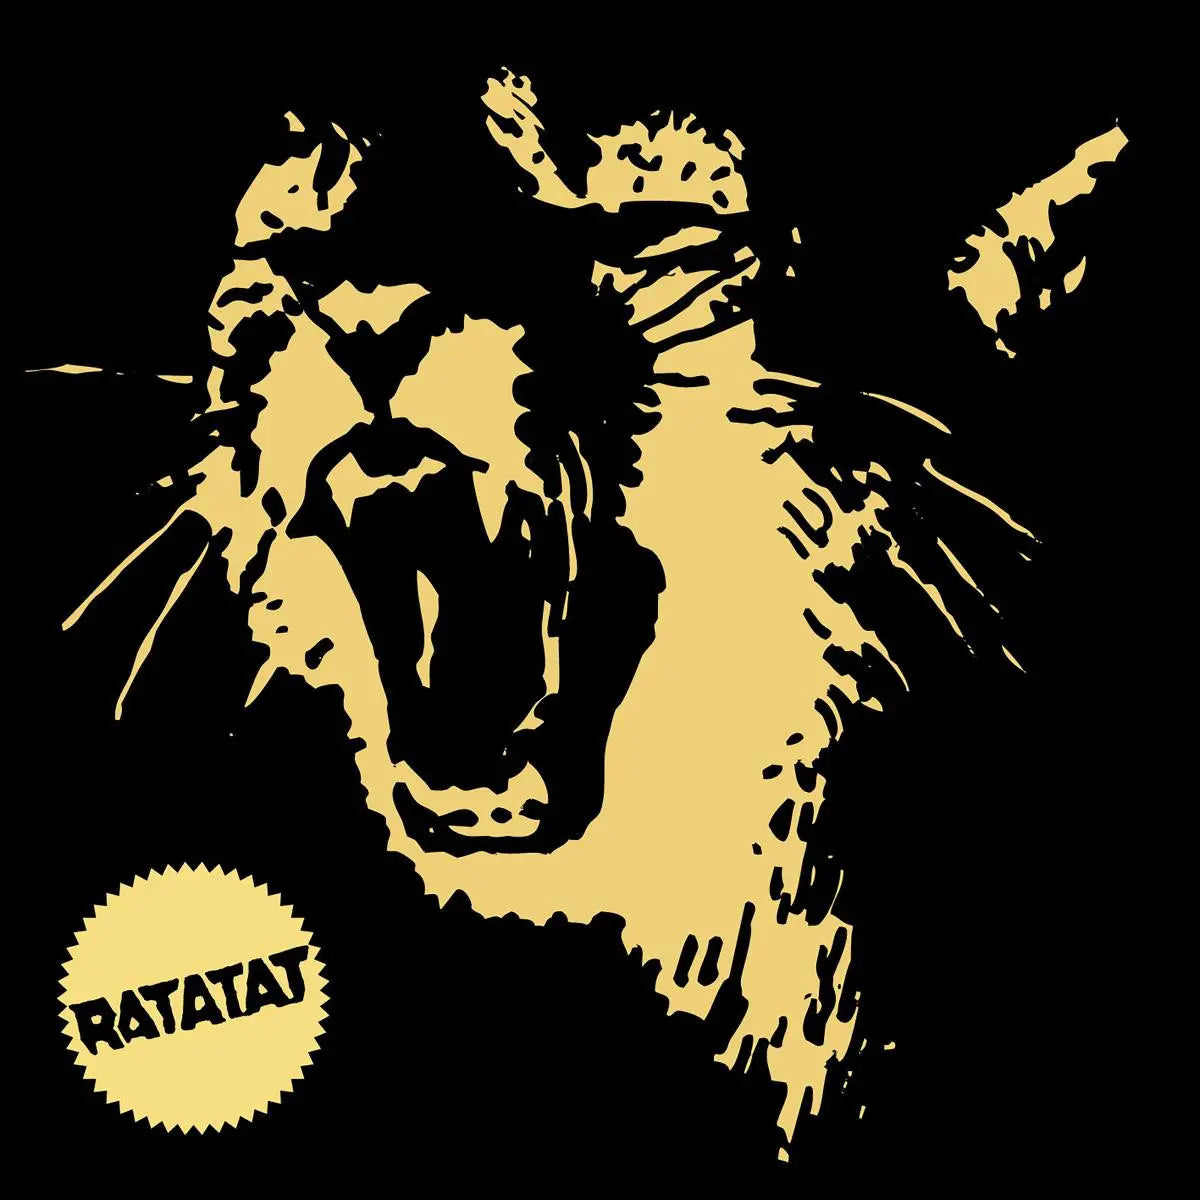 Ratatat - Classics [Vinyl]